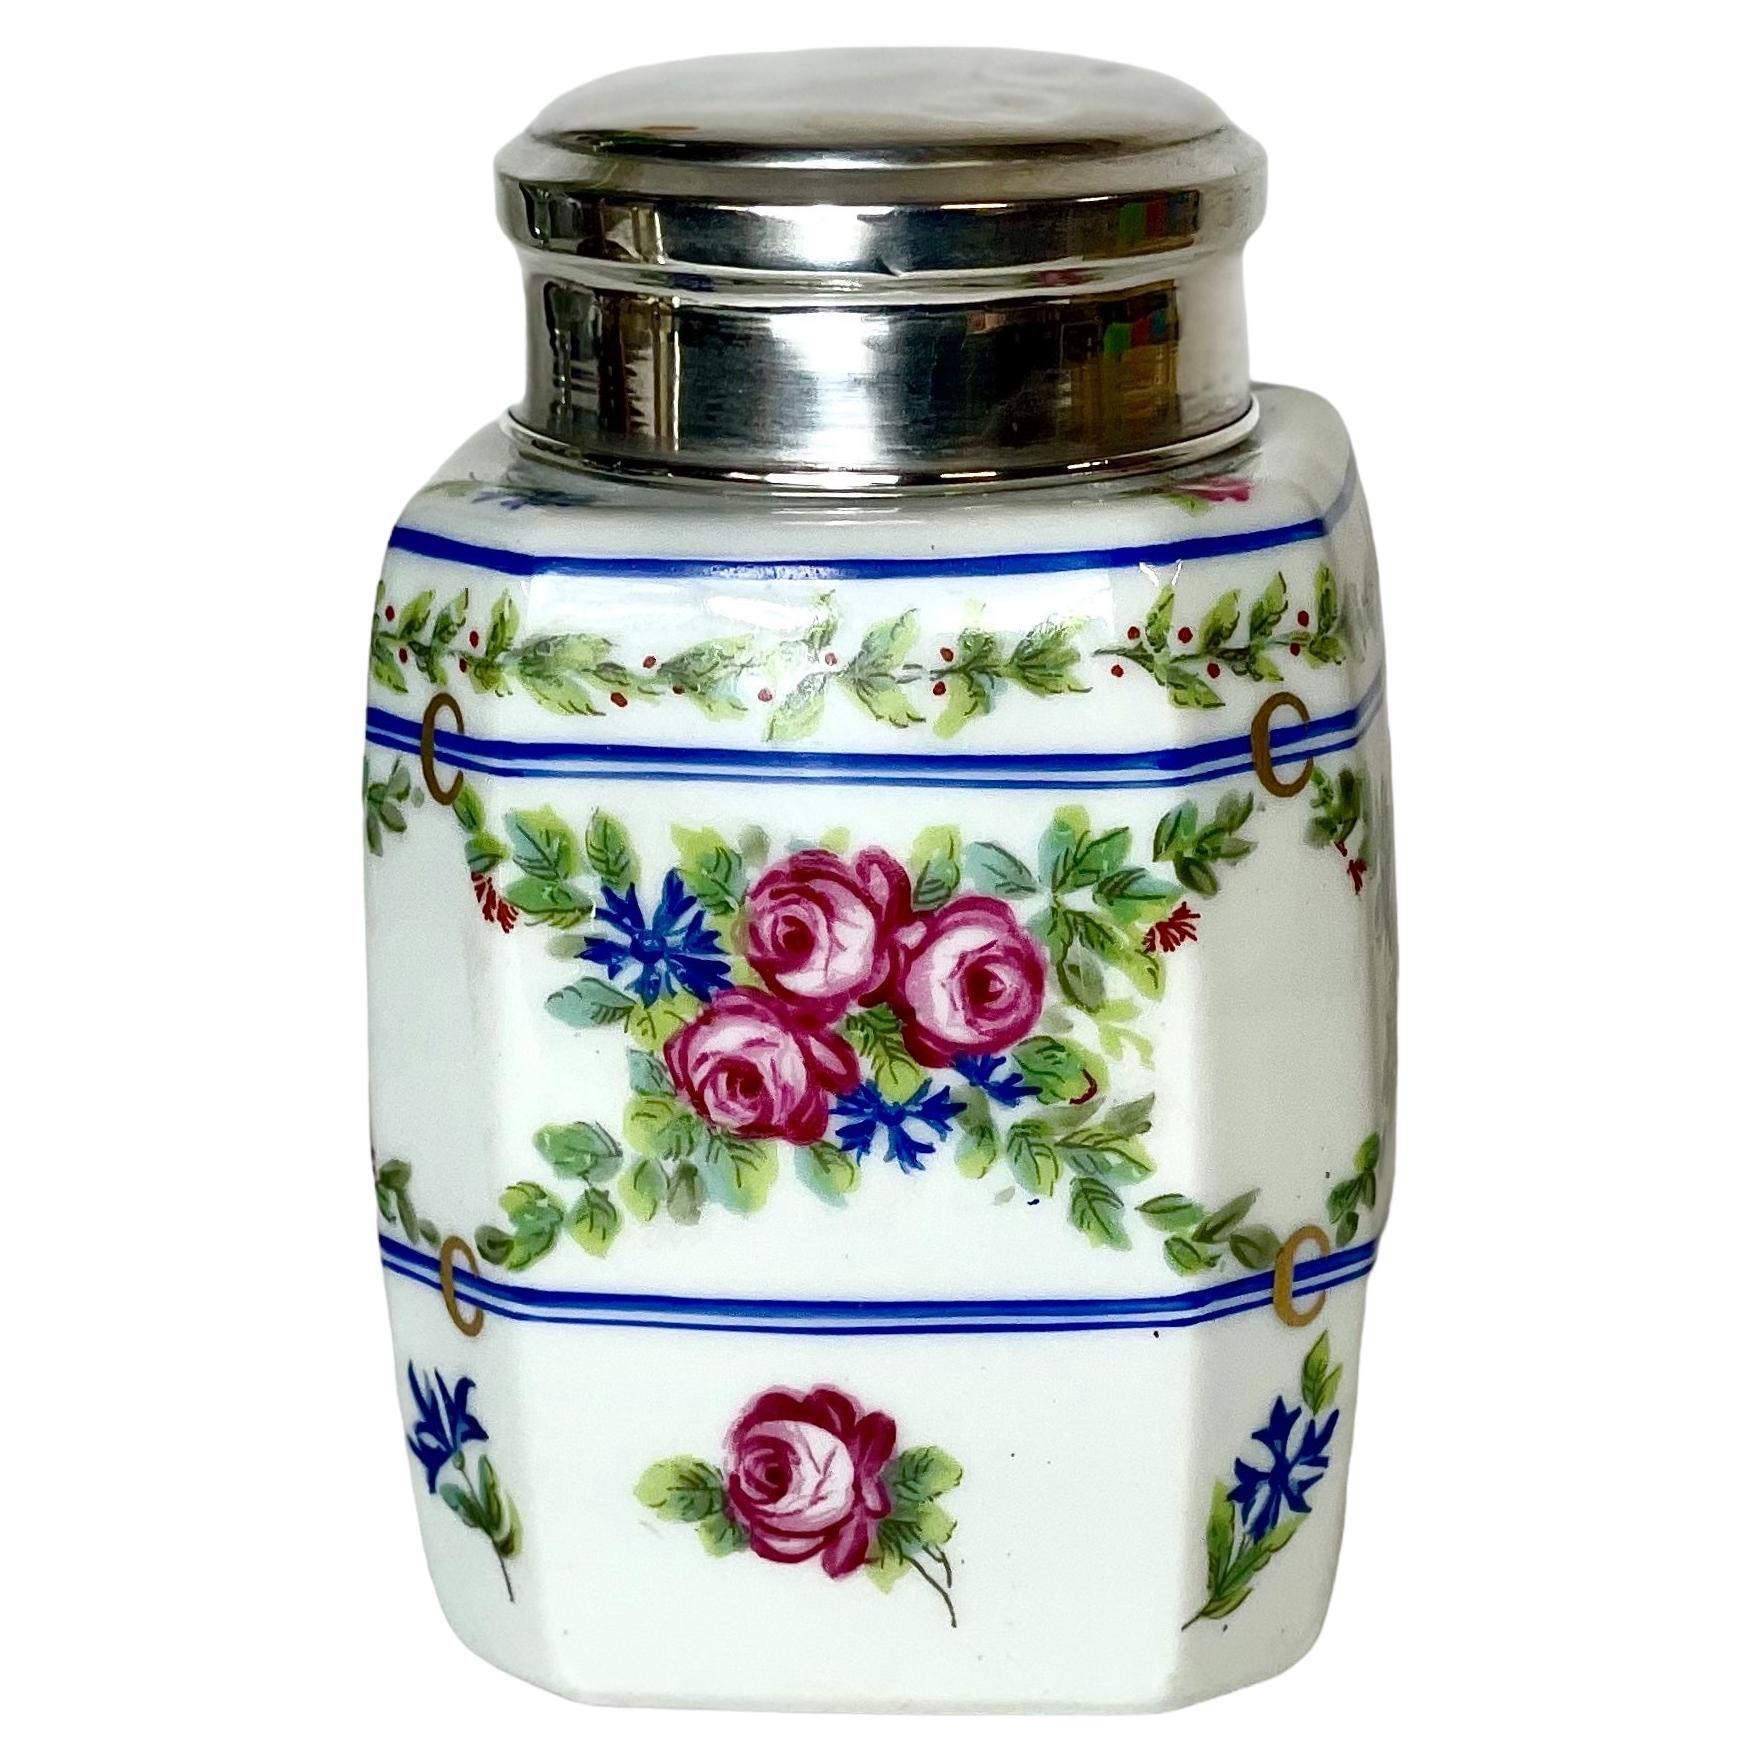 Limoges Porcelain Jar with Silver Lid